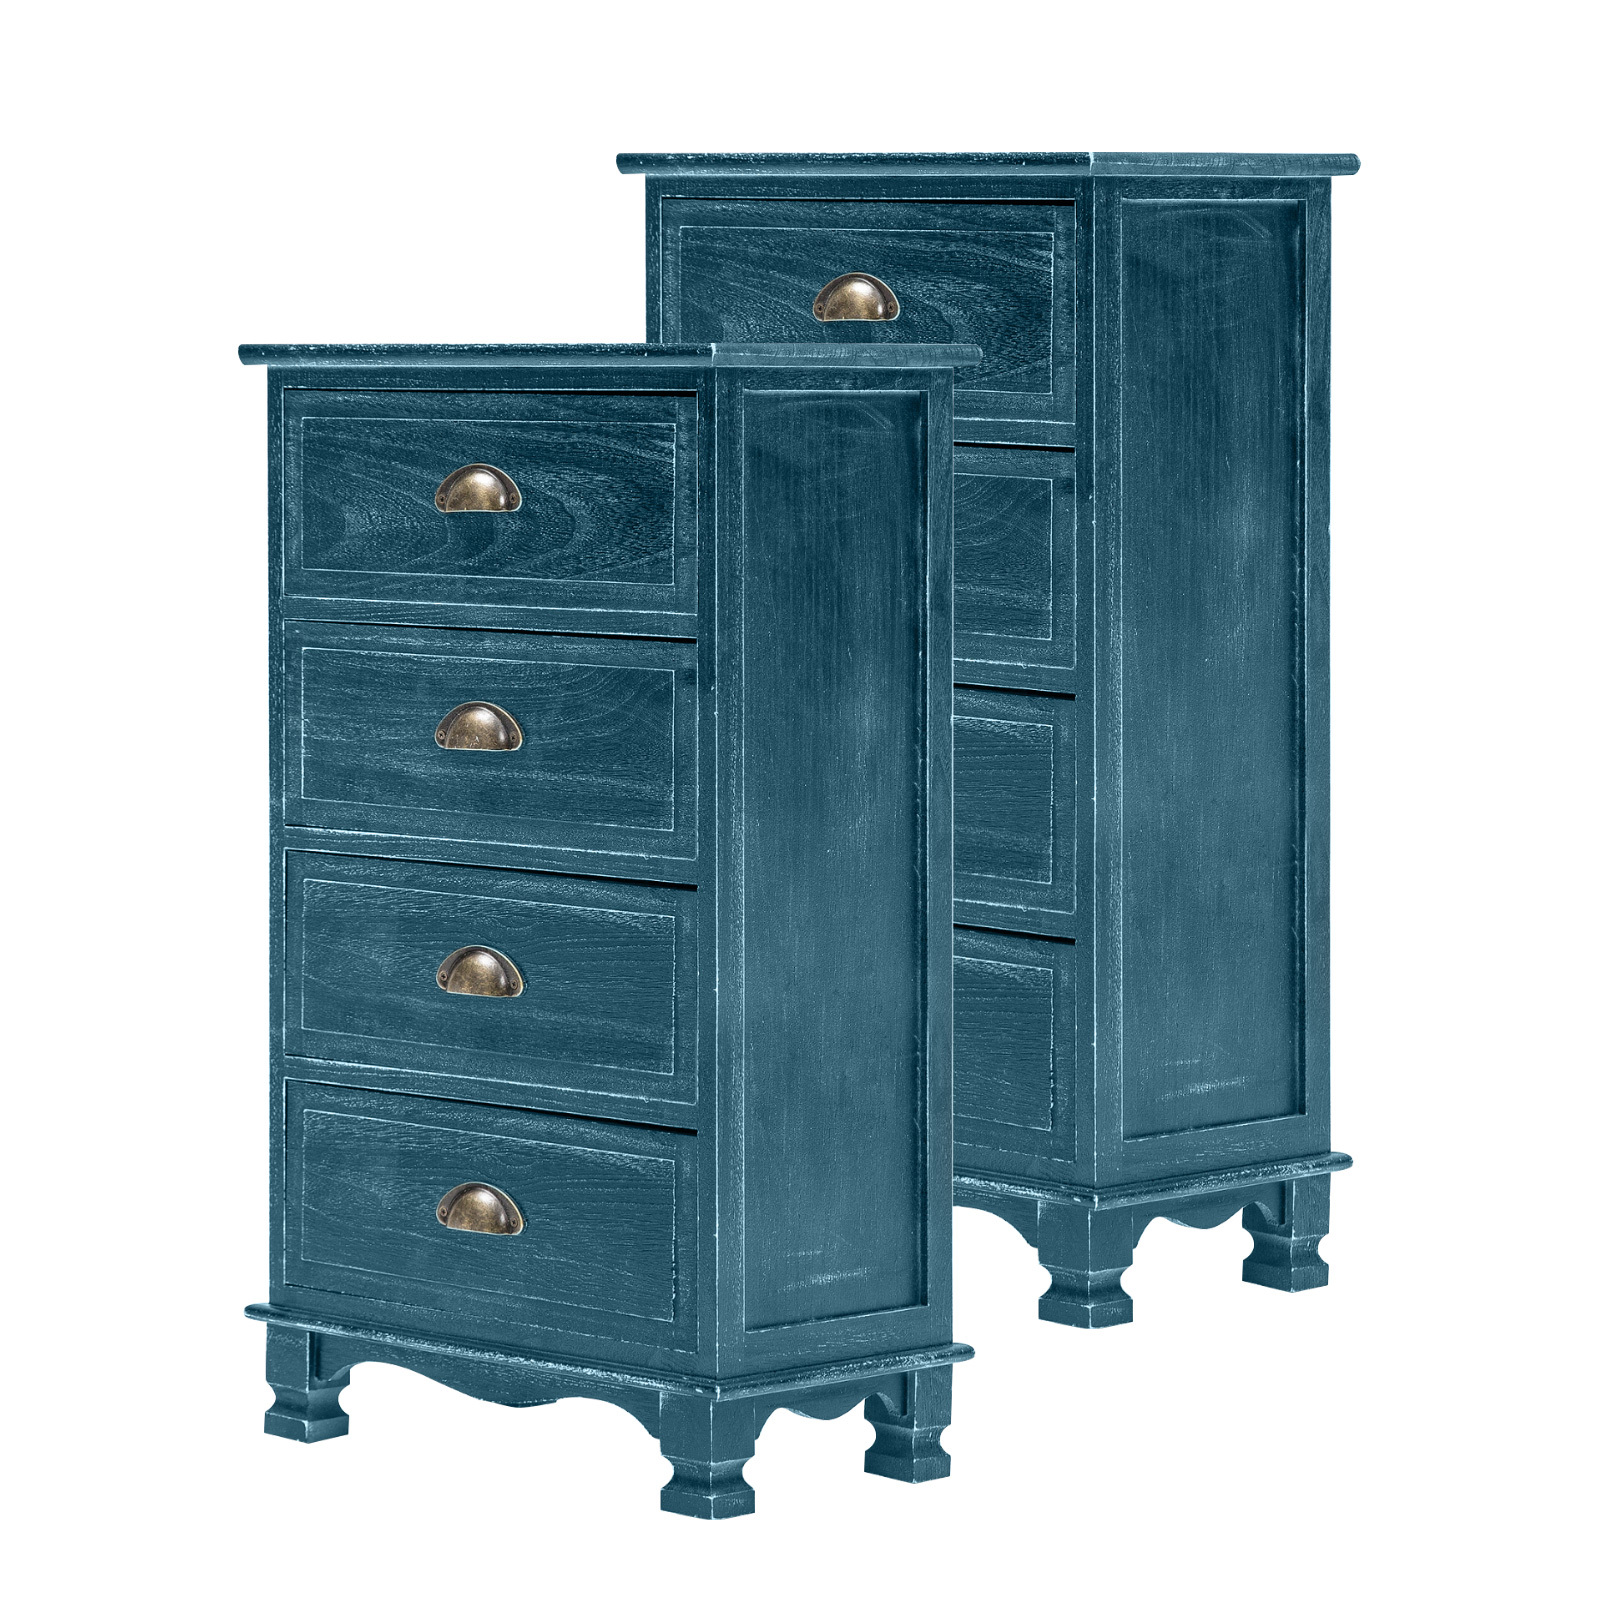 2X Vintage Storage Cabinet Bedside Table 4 Drawer ADELINE - BLUE